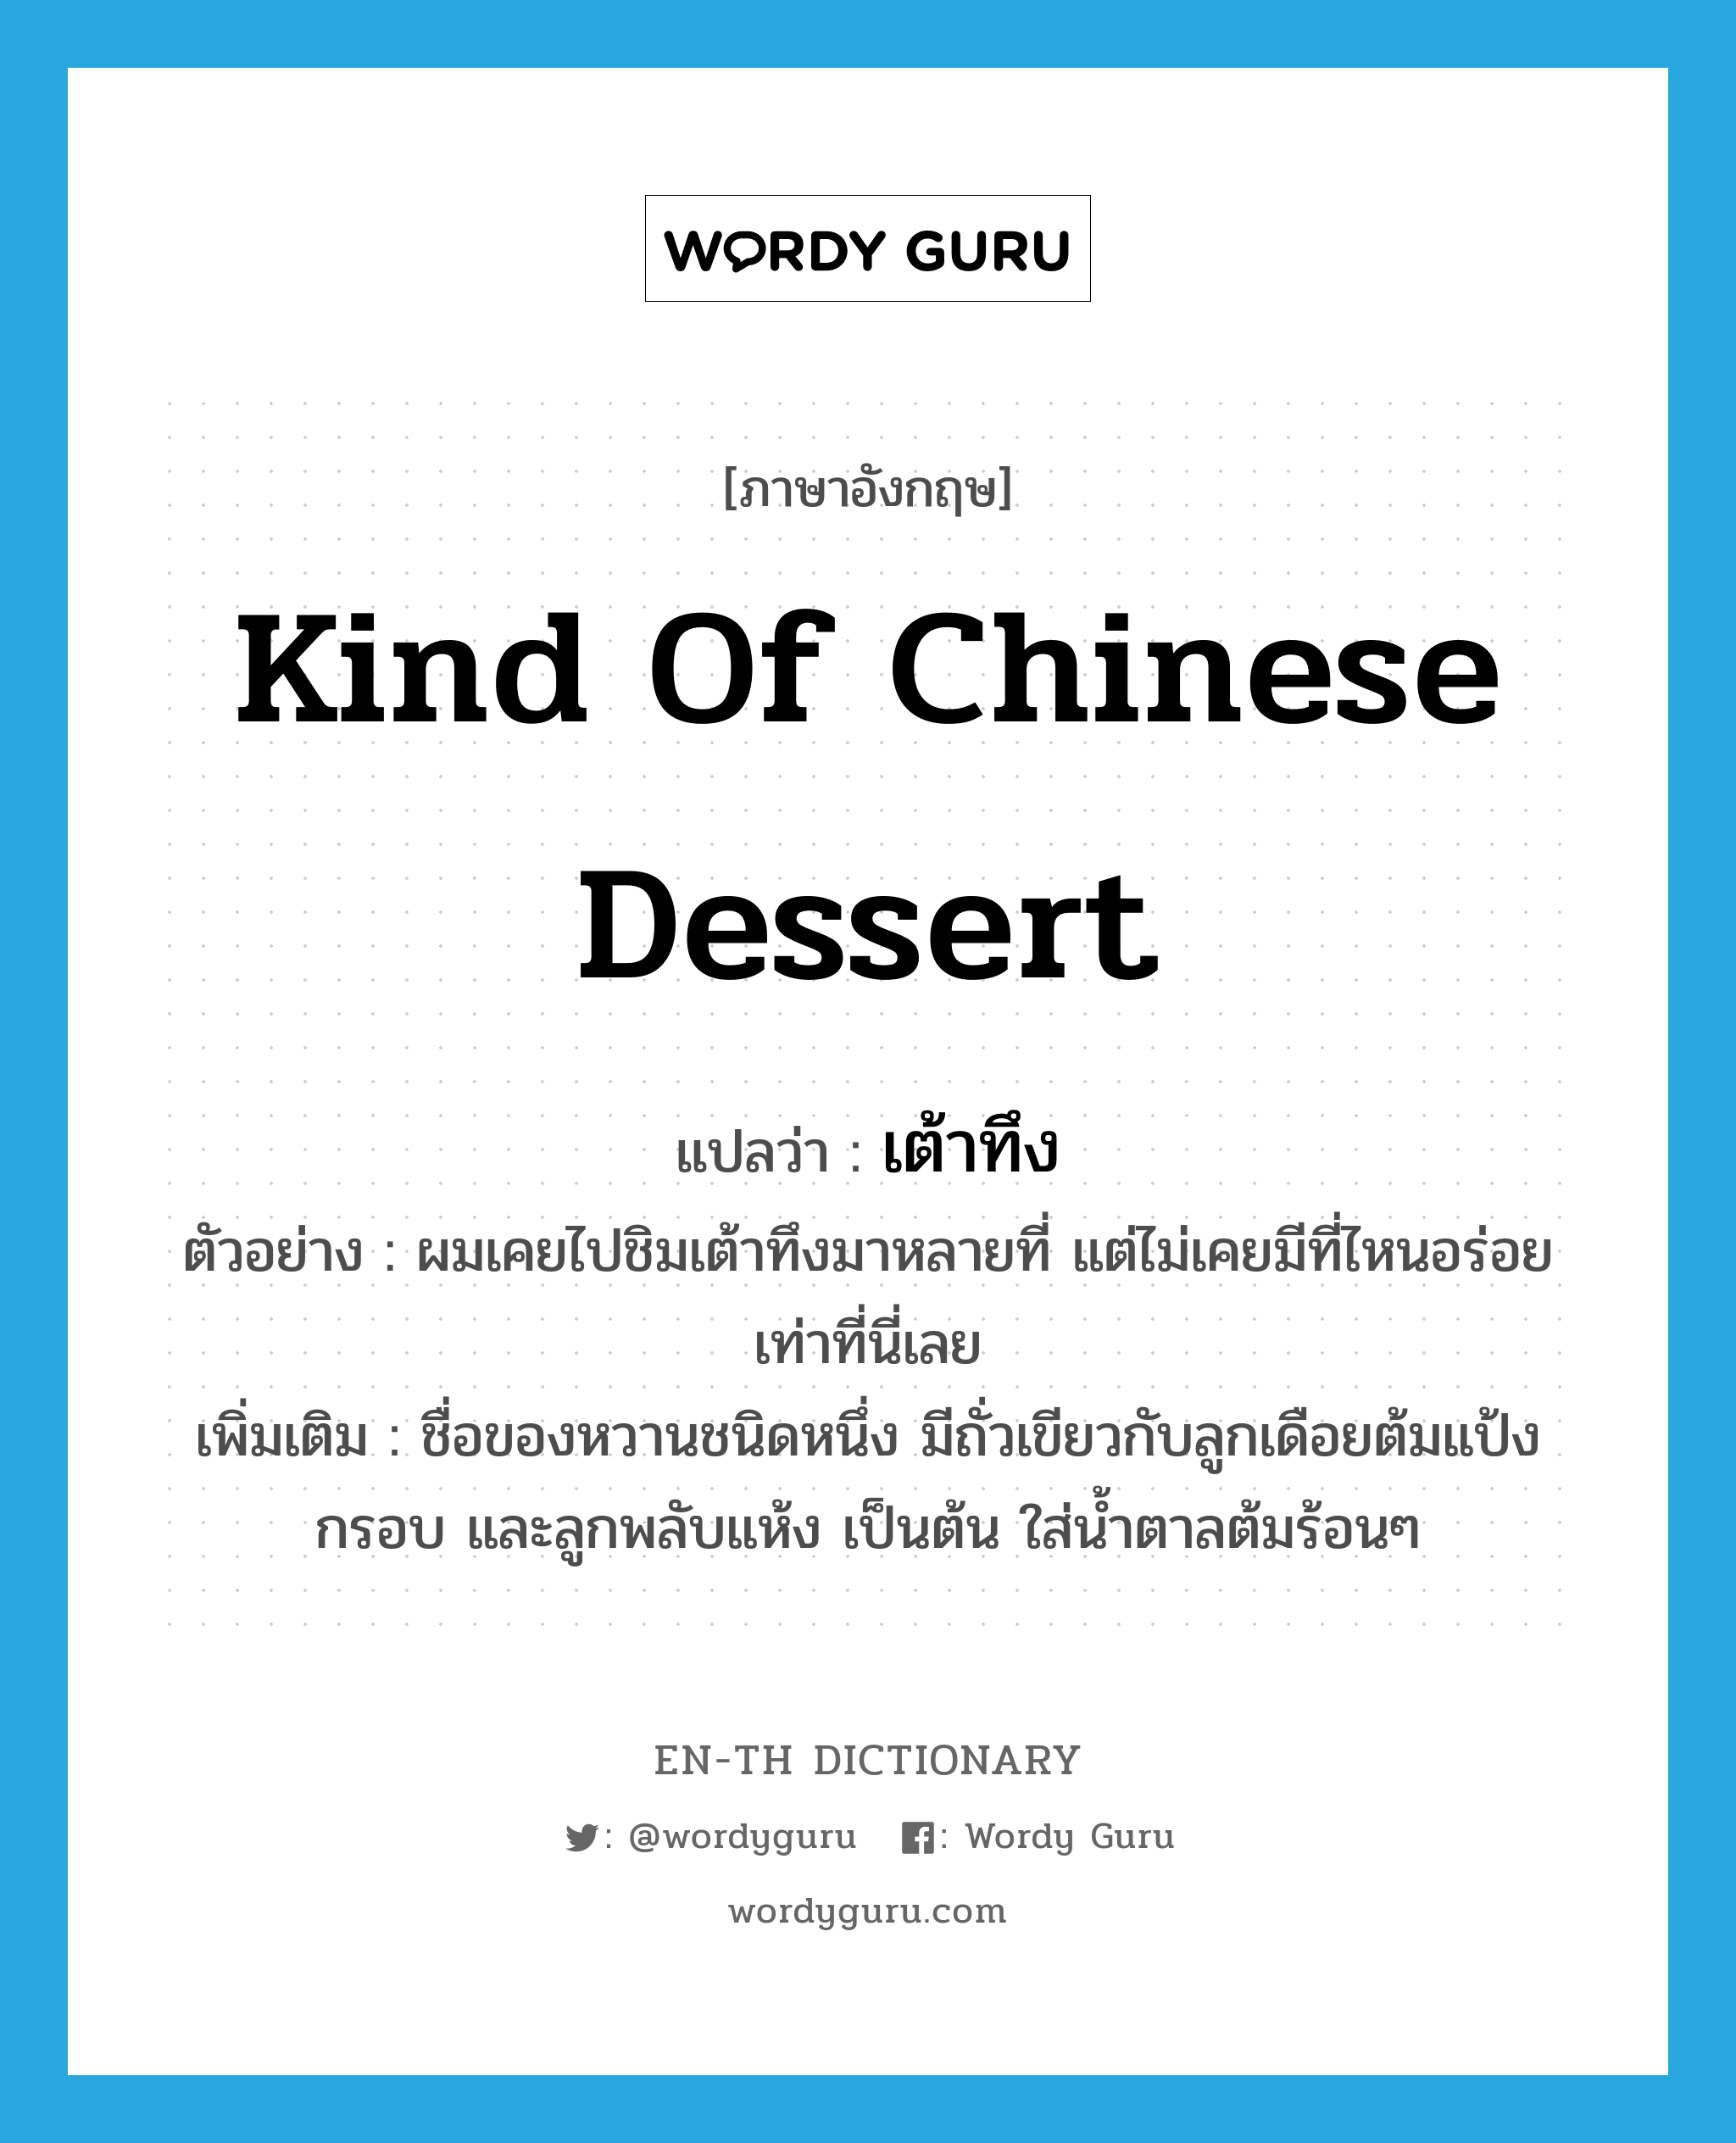 kind of Chinese dessert แปลว่า?, คำศัพท์ภาษาอังกฤษ kind of Chinese dessert แปลว่า เต้าทึง ประเภท N ตัวอย่าง ผมเคยไปชิมเต้าทึงมาหลายที่ แต่ไม่เคยมีที่ไหนอร่อยเท่าที่นี่เลย เพิ่มเติม ชื่อของหวานชนิดหนึ่ง มีถั่วเขียวกับลูกเดือยต้มแป้งกรอบ และลูกพลับแห้ง เป็นต้น ใส่น้ำตาลต้มร้อนๆ หมวด N